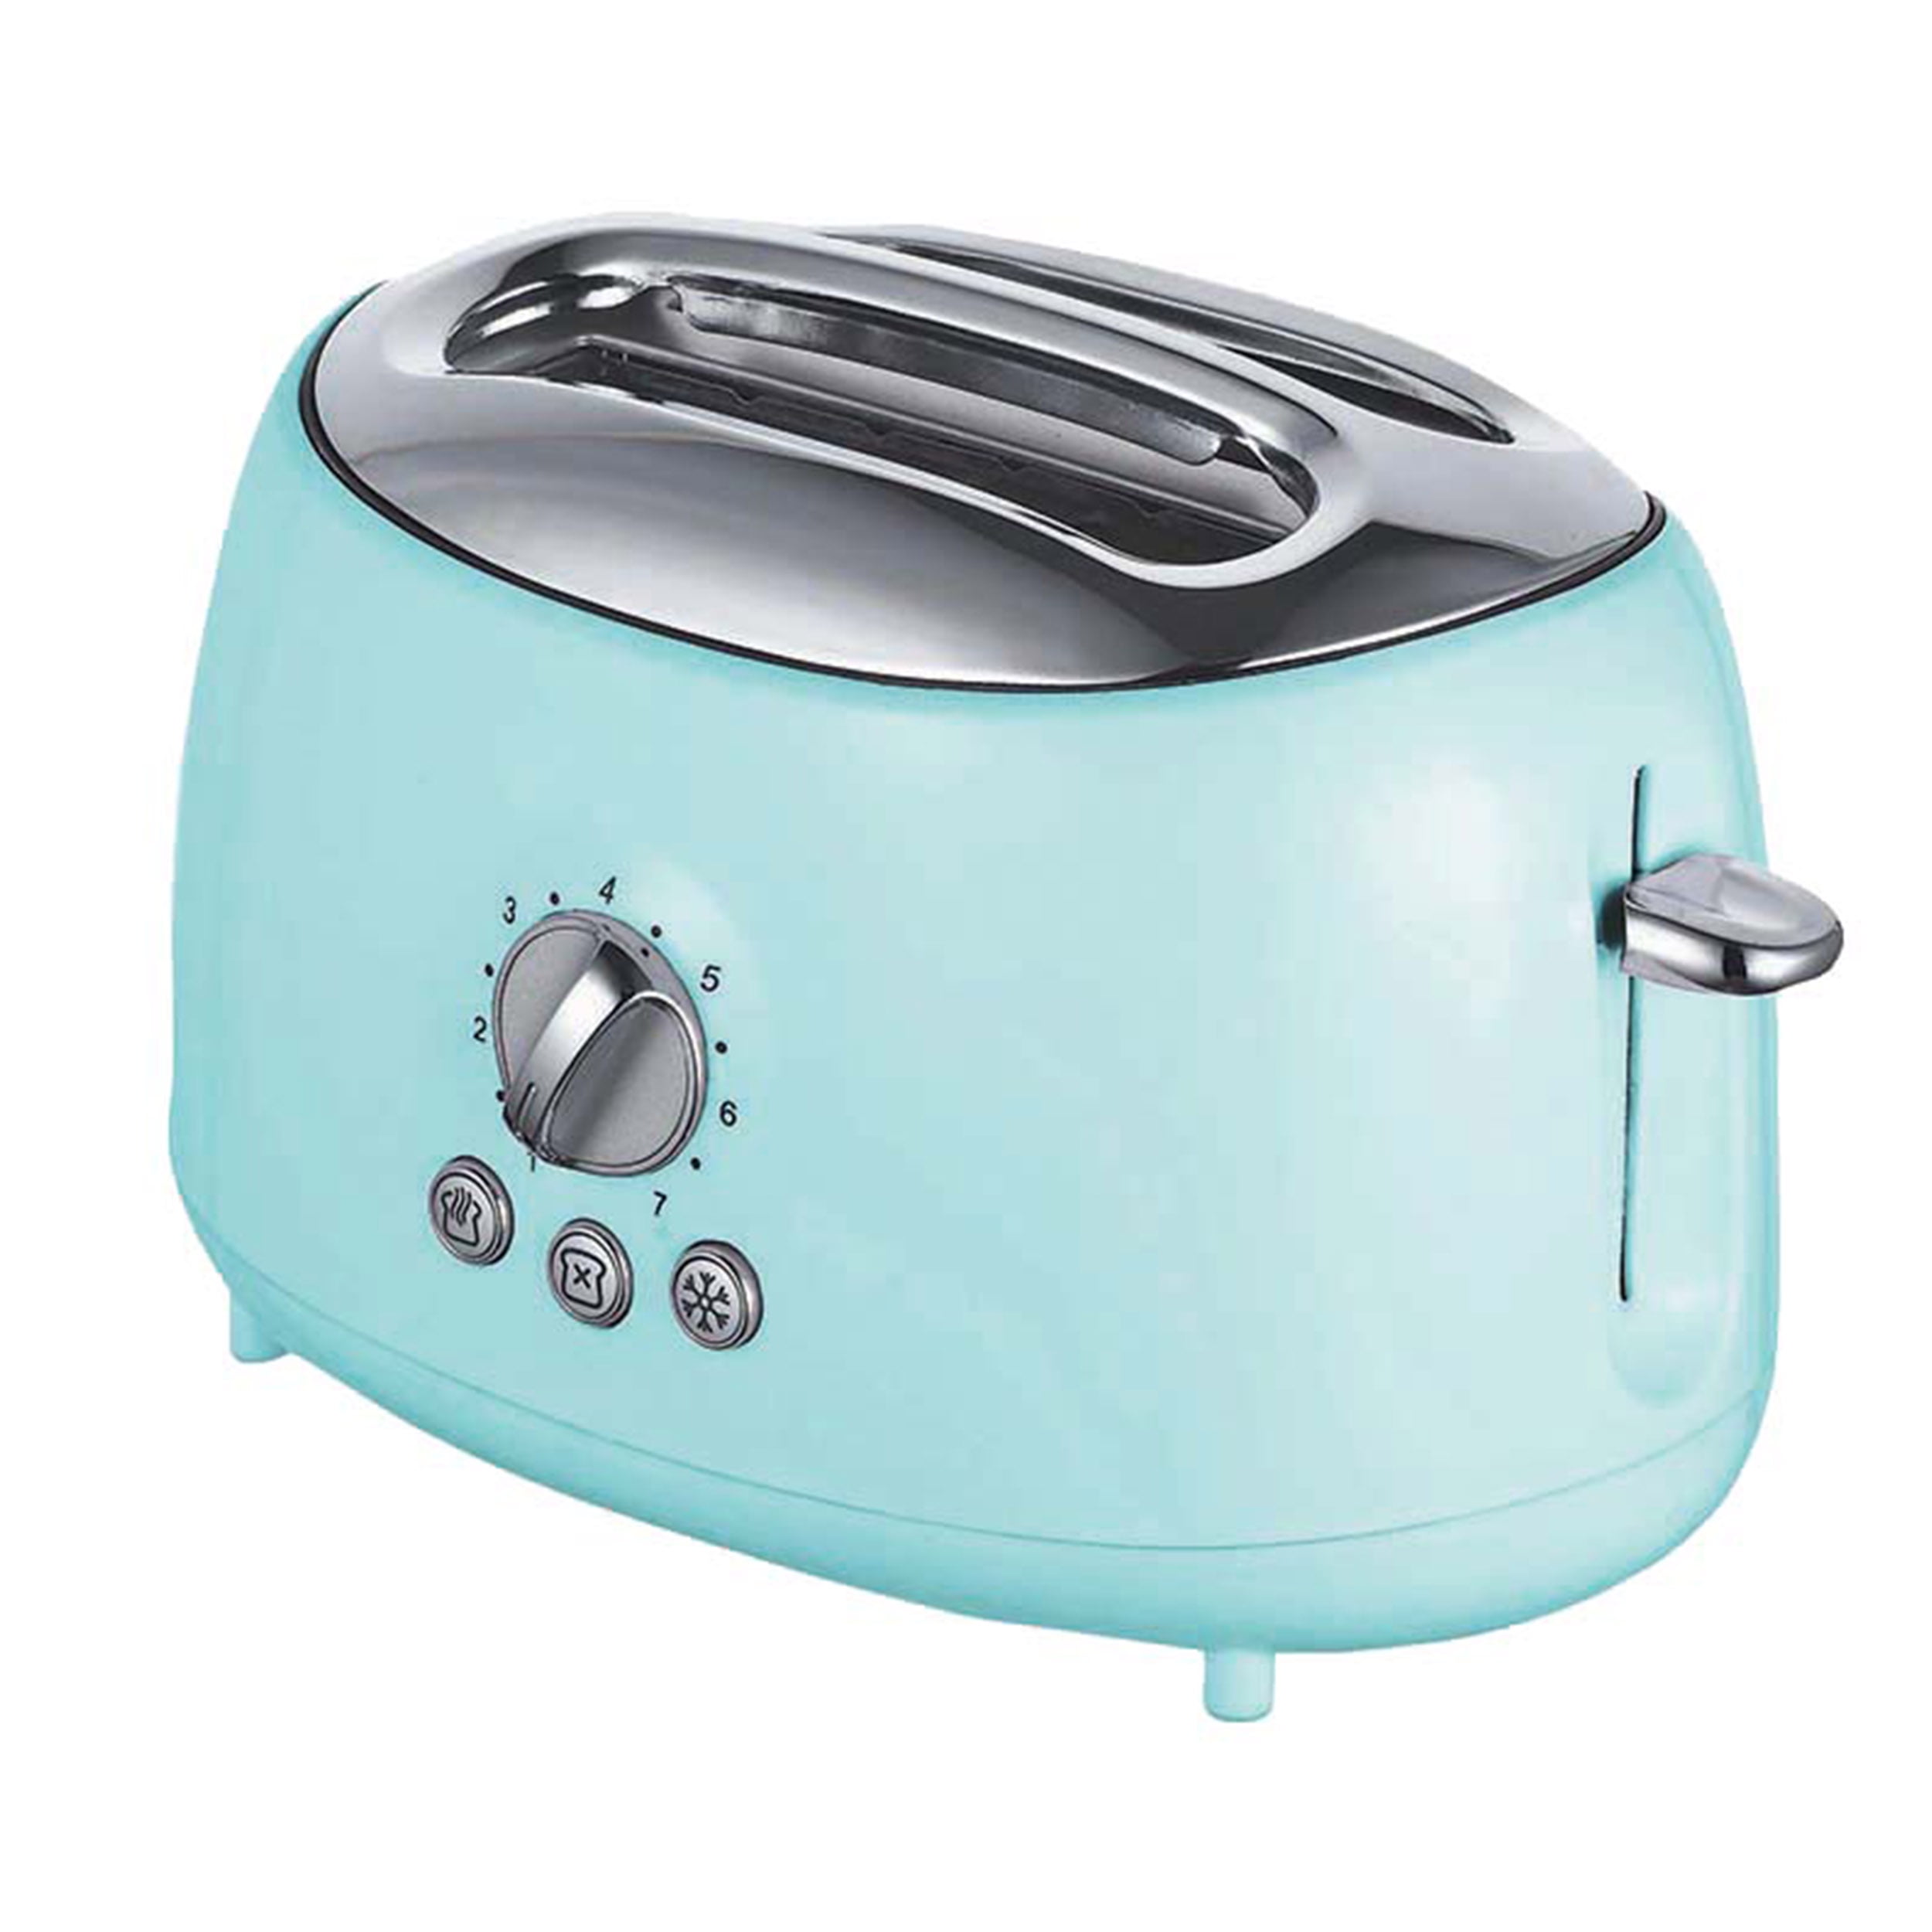 Slim 2-slice Toaster - appliances - by owner - sale - craigslist